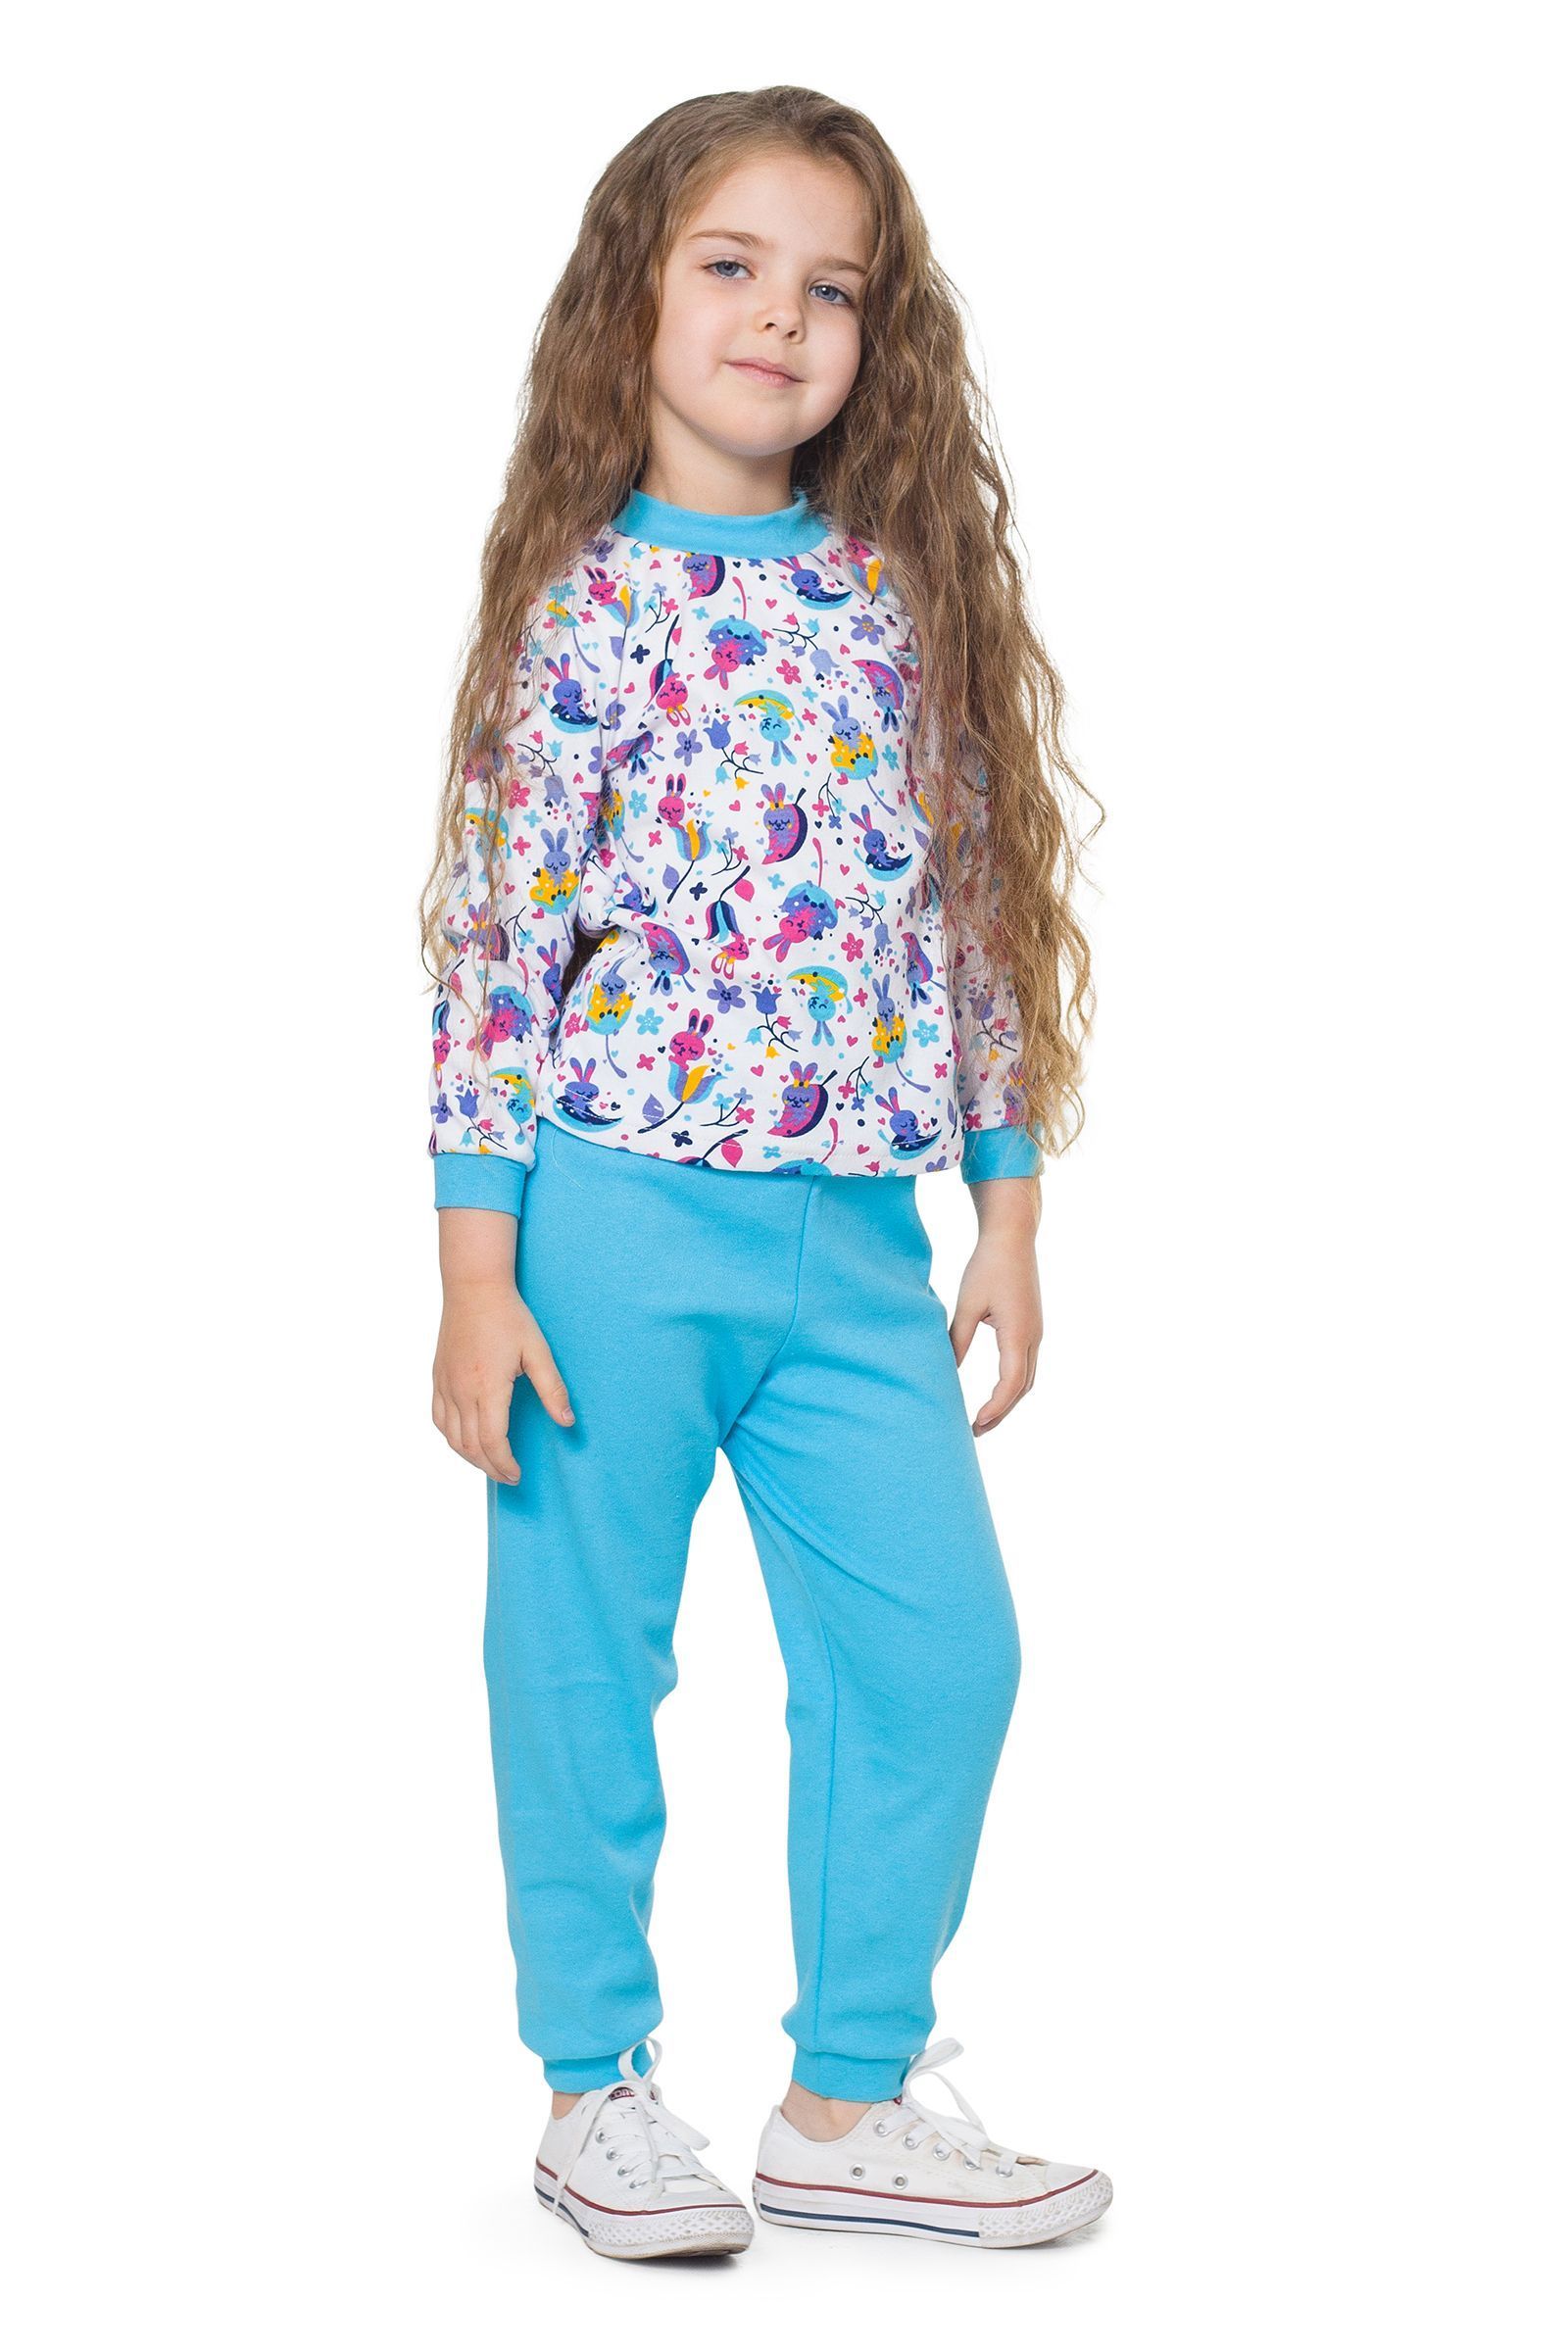 Пижама-ПЖ01-2439 оптом от производителя детской одежды 'Алёна'